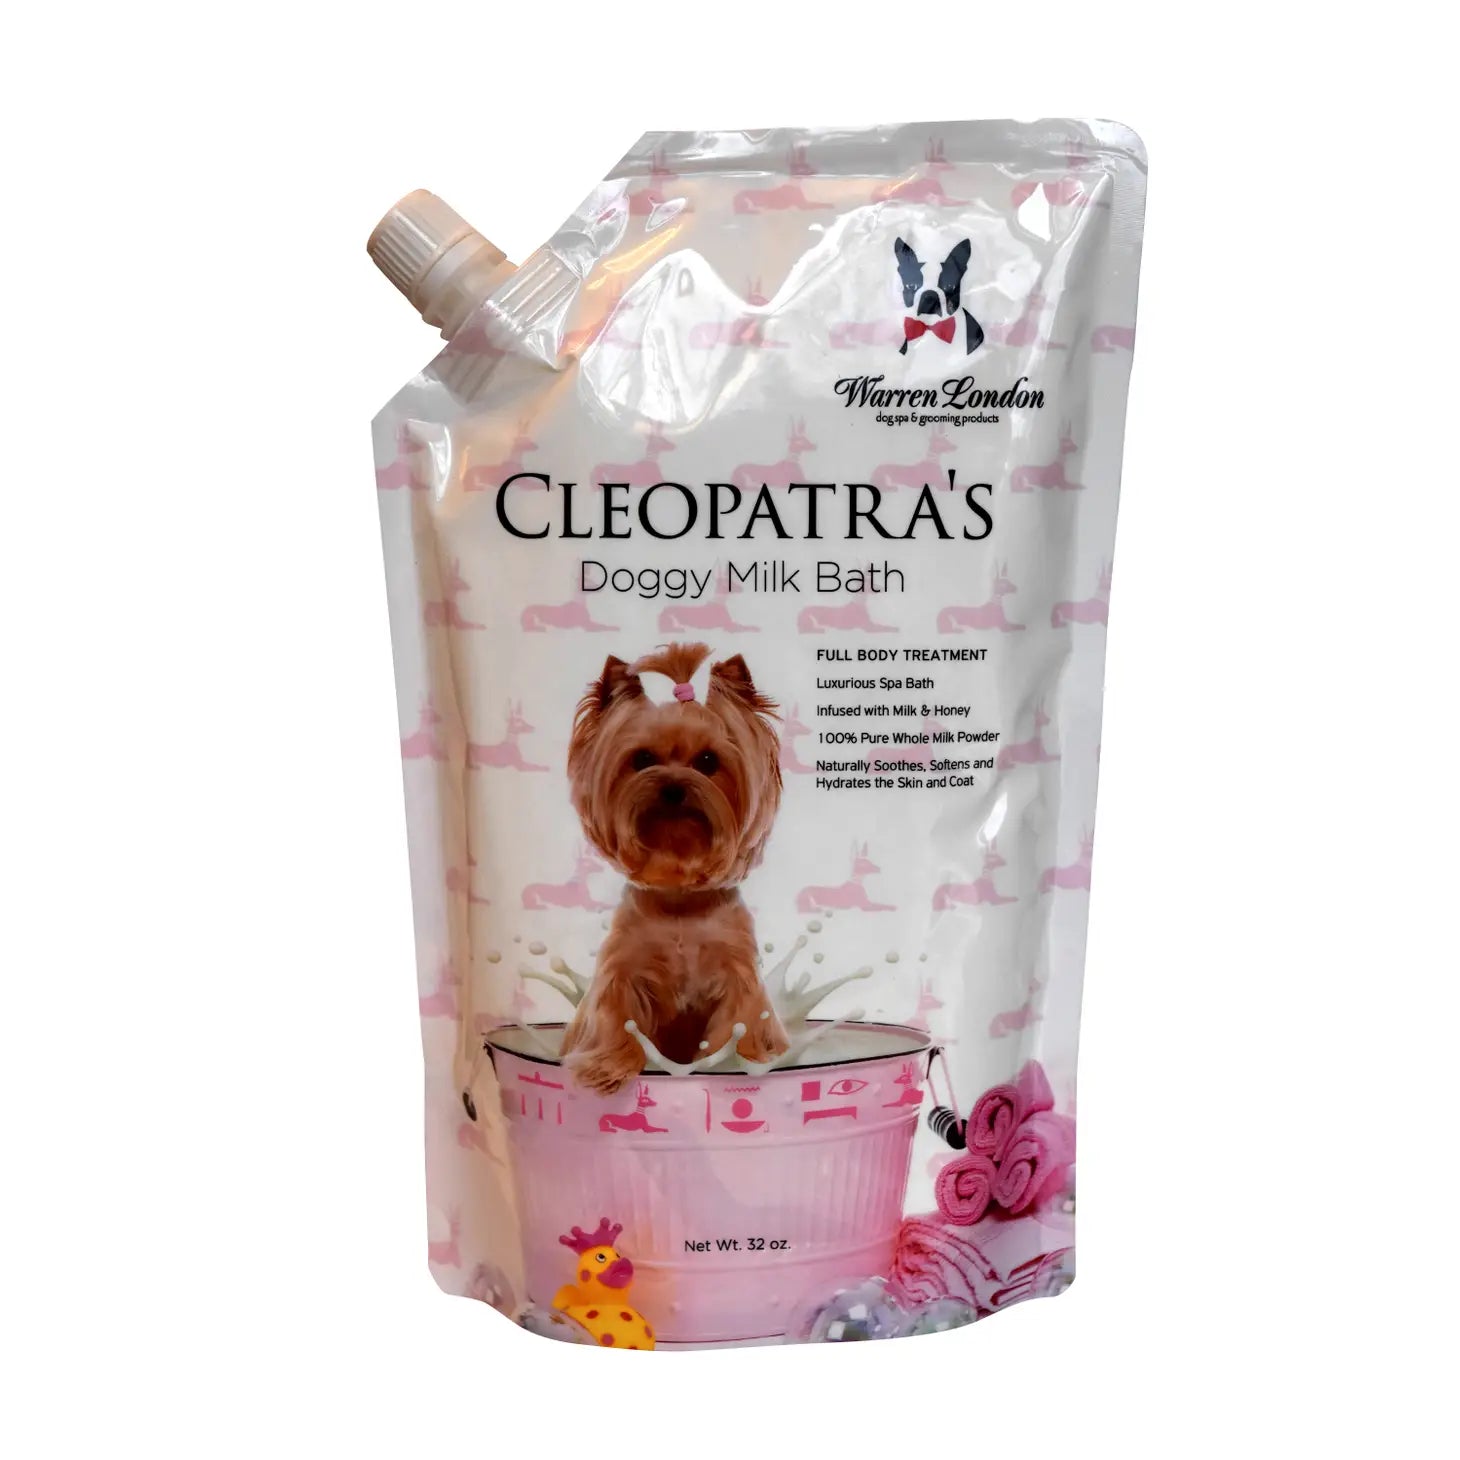 Cleopatra's Doggy Milk Bath